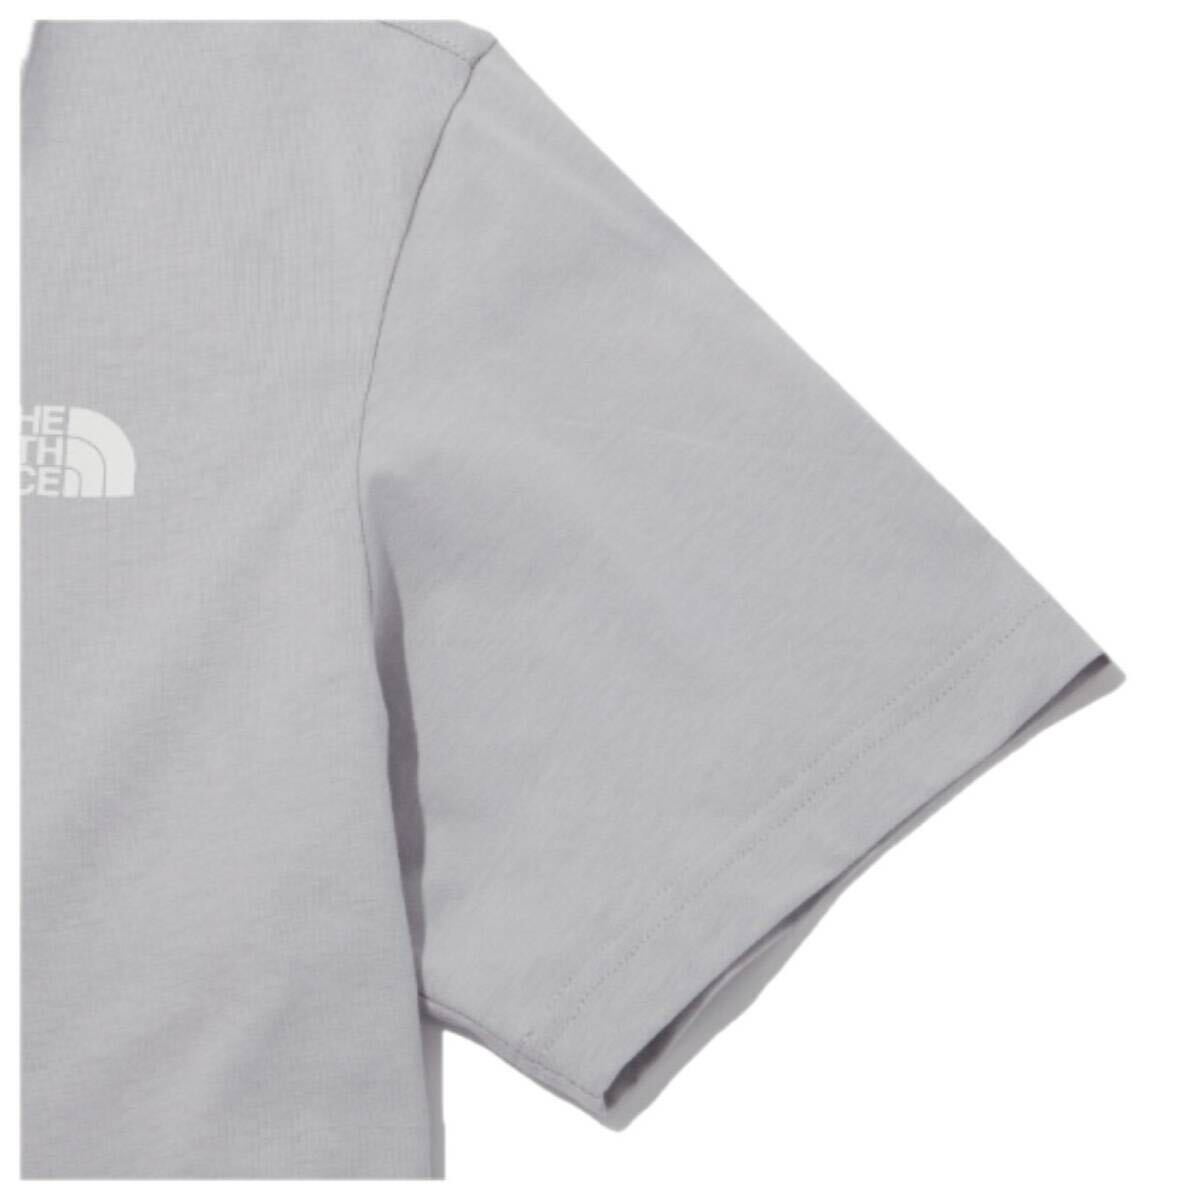 ザ ノースフェイス Tシャツ NT7U ライトグレー XLサイズ コットン素材 クルーネック シンプルロゴ THE NORTH FACE COTTON S/S TEE 新品の画像6